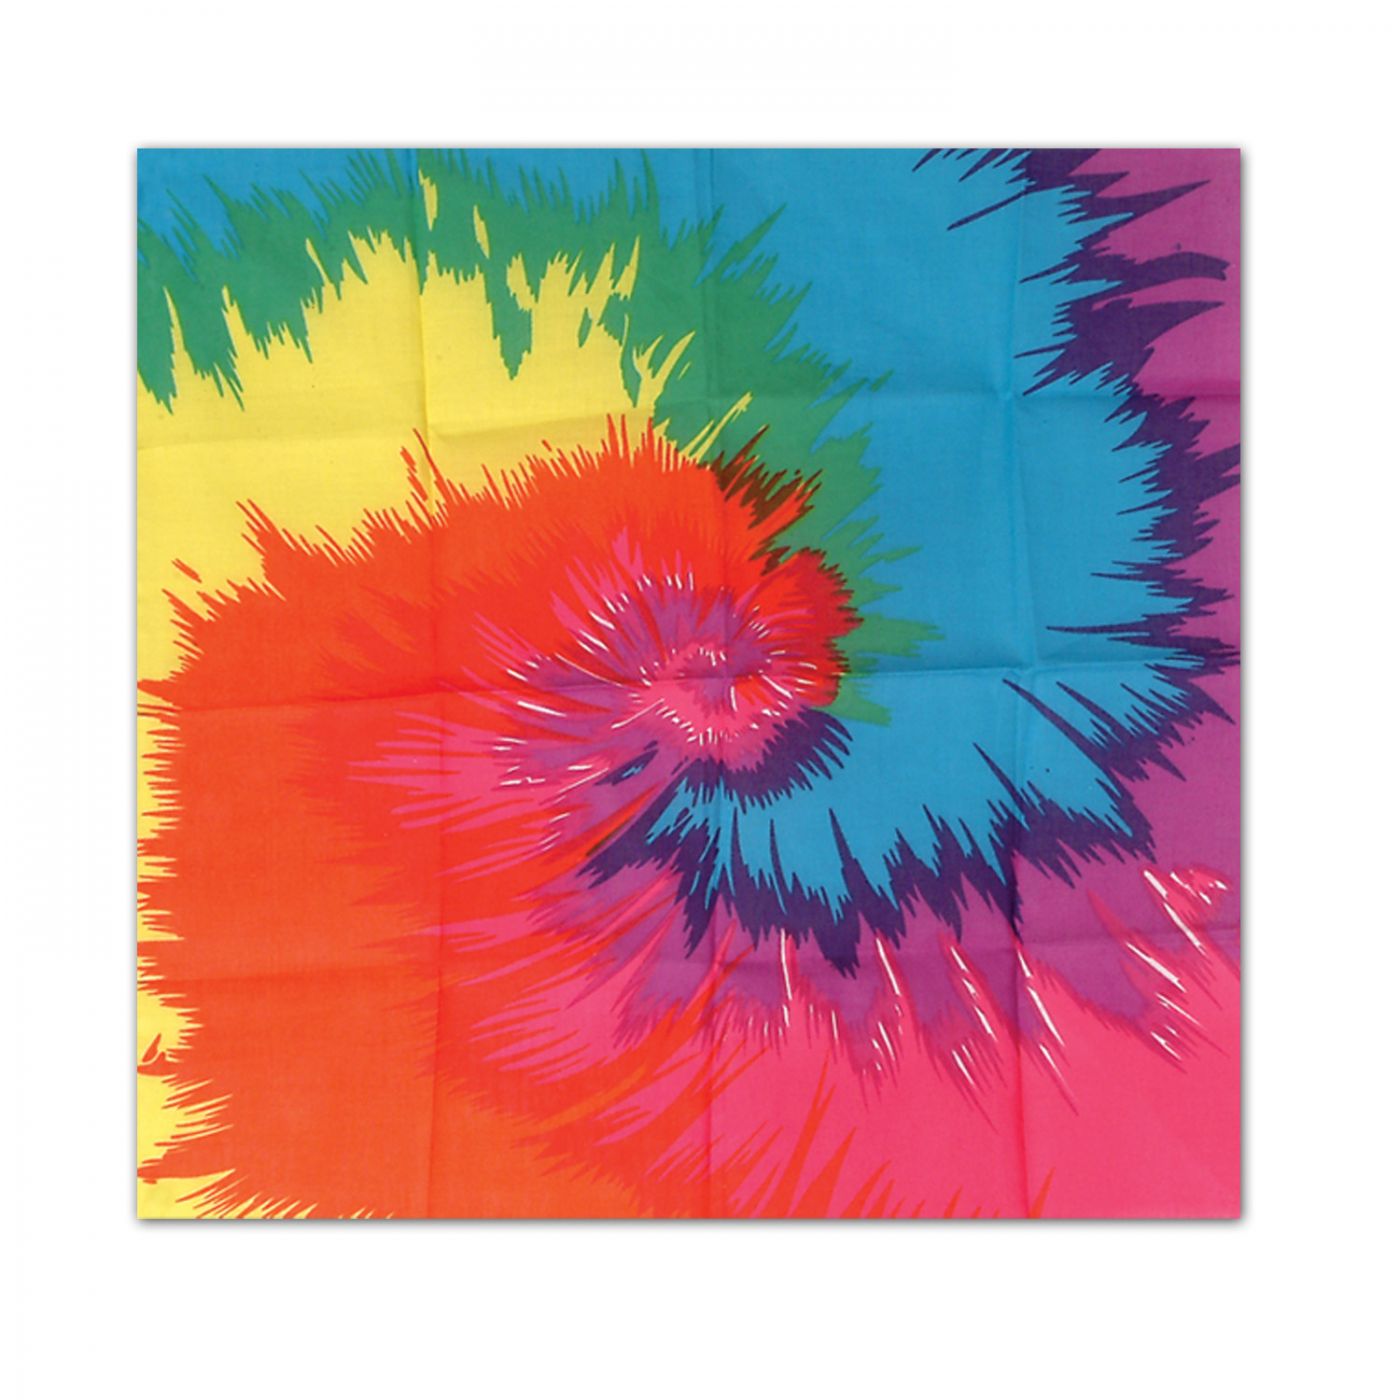 Funky Tie-Dyed Bandana image